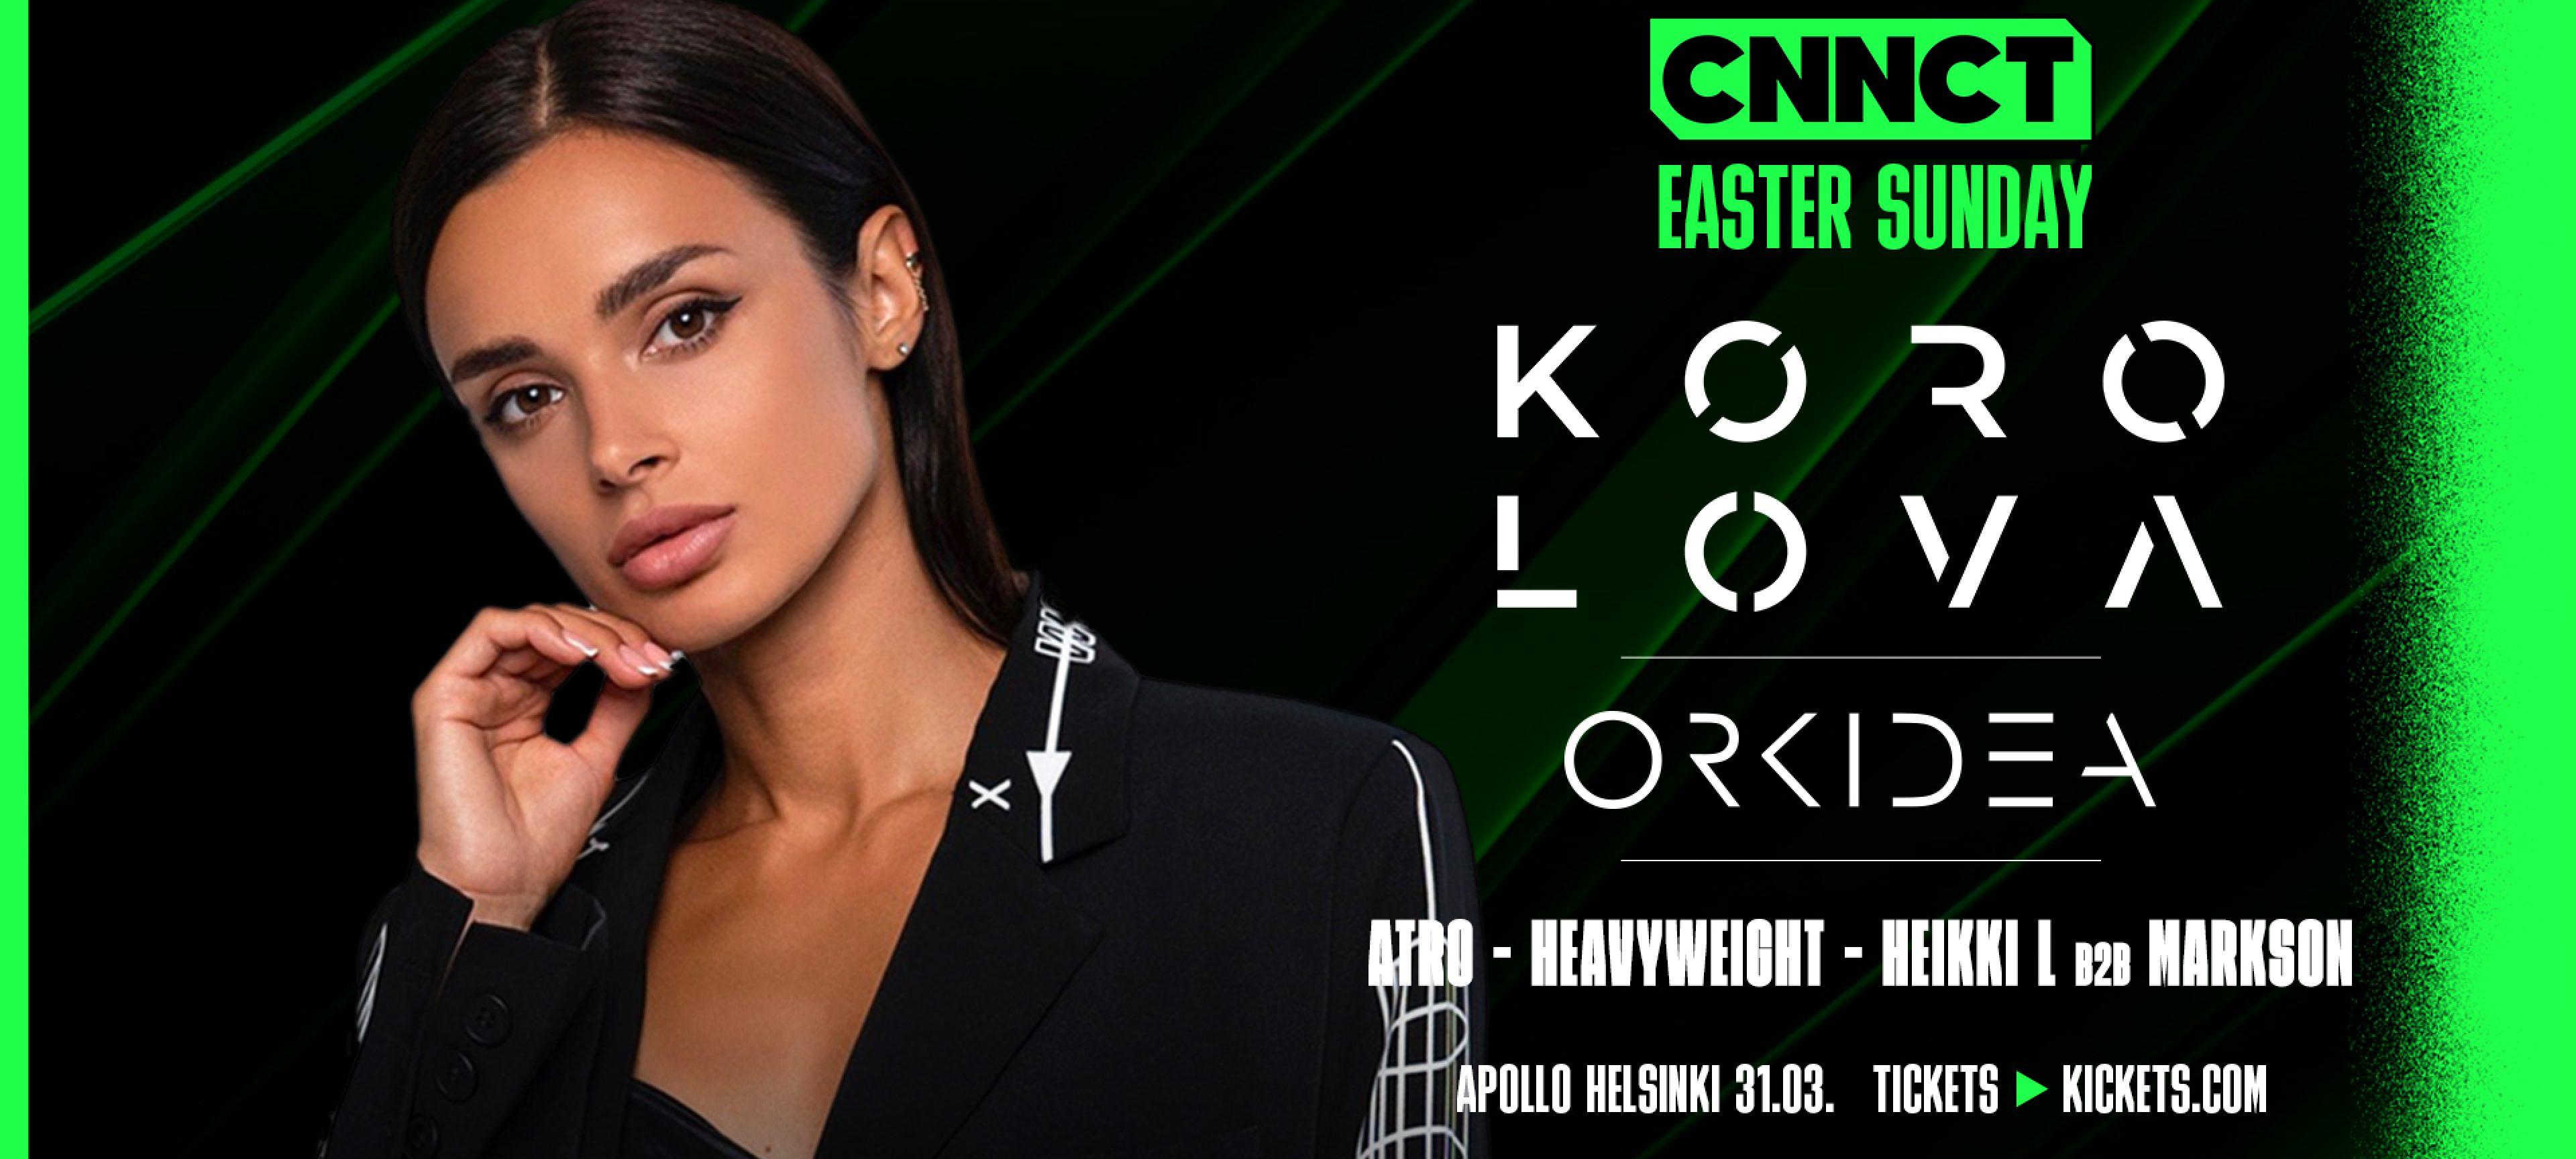 CNNCT Easter with Korolova